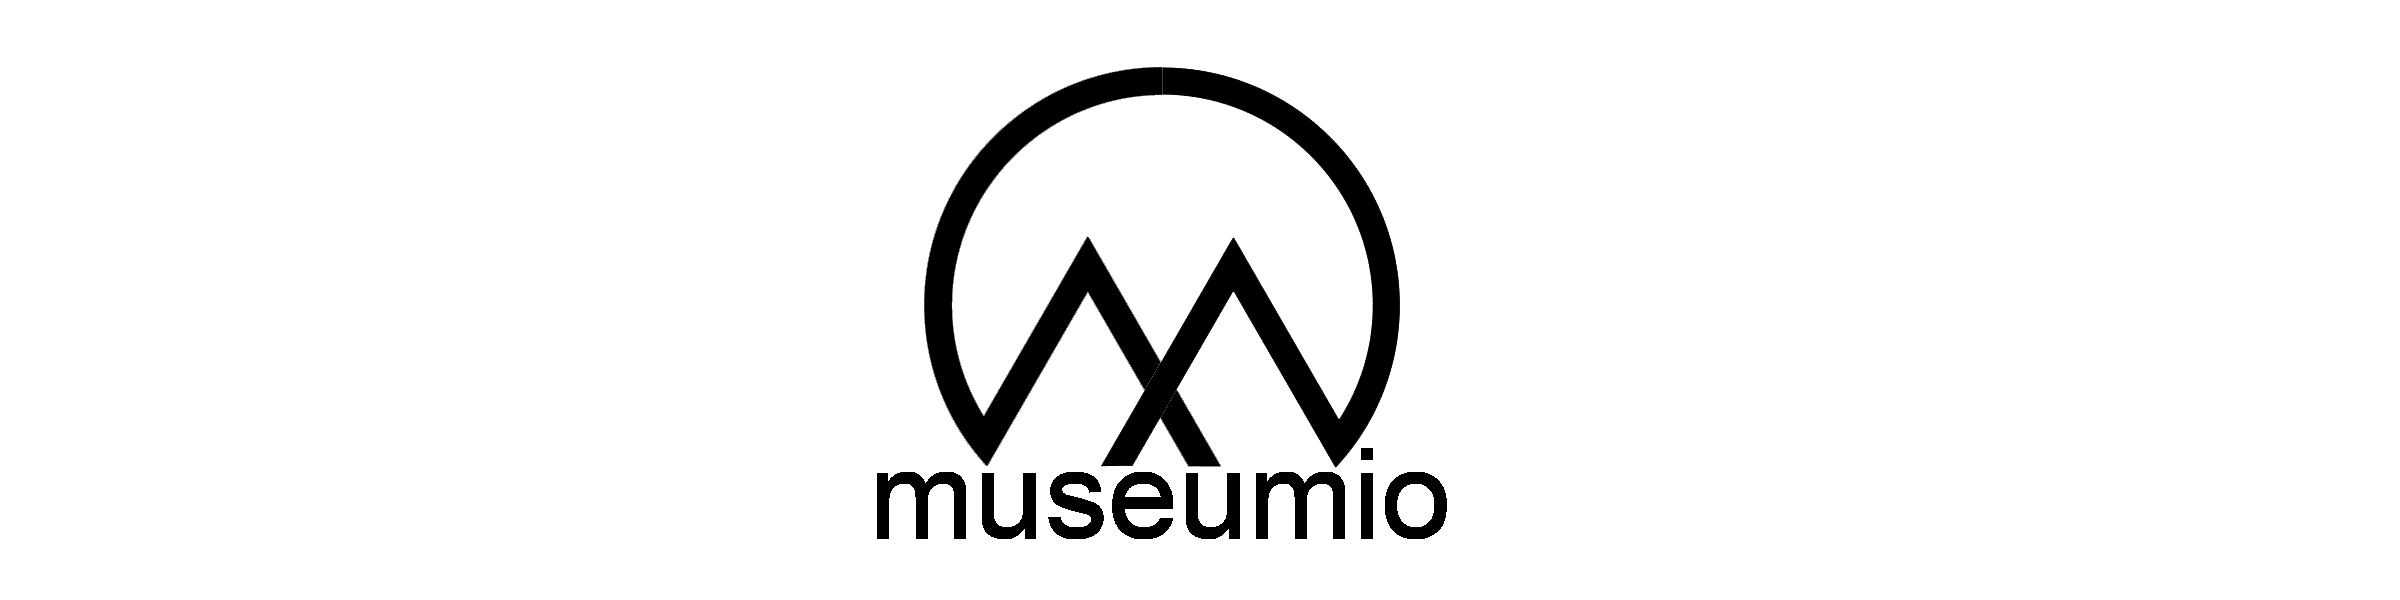 Museumio